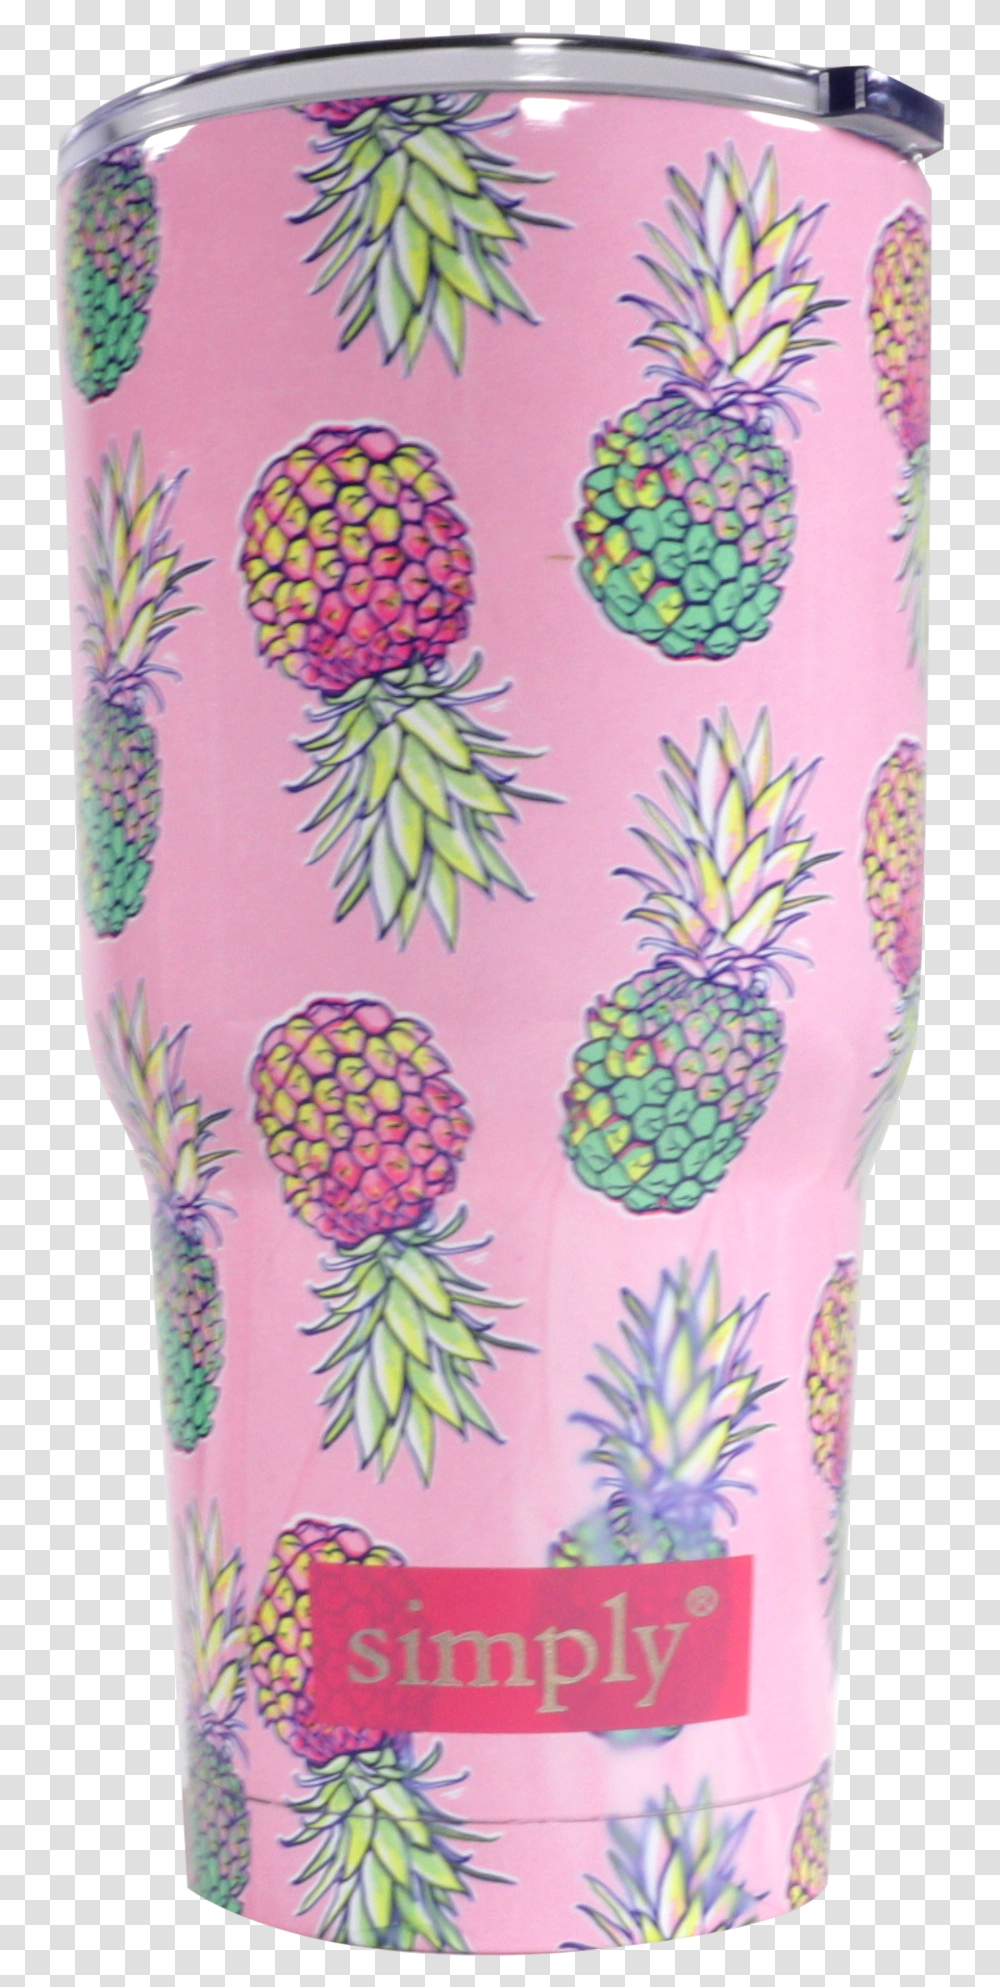 Pineapple, Fruit, Plant, Food, Floral Design Transparent Png